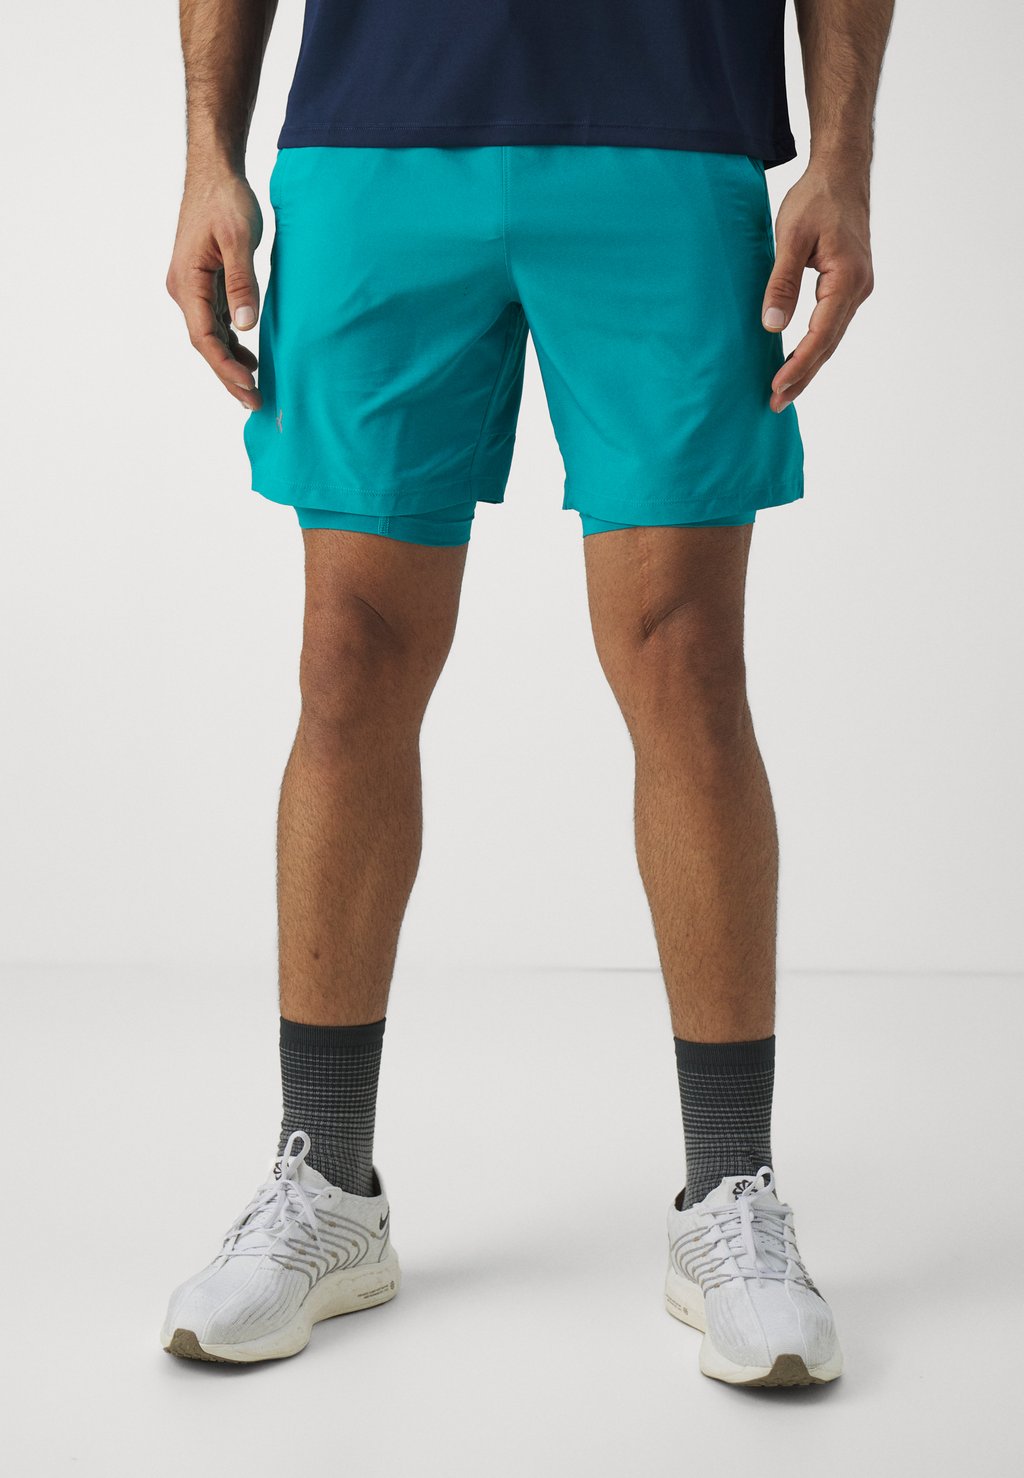 Спортивные шорты Launch Shorts Under Armour, цвет circuit teal